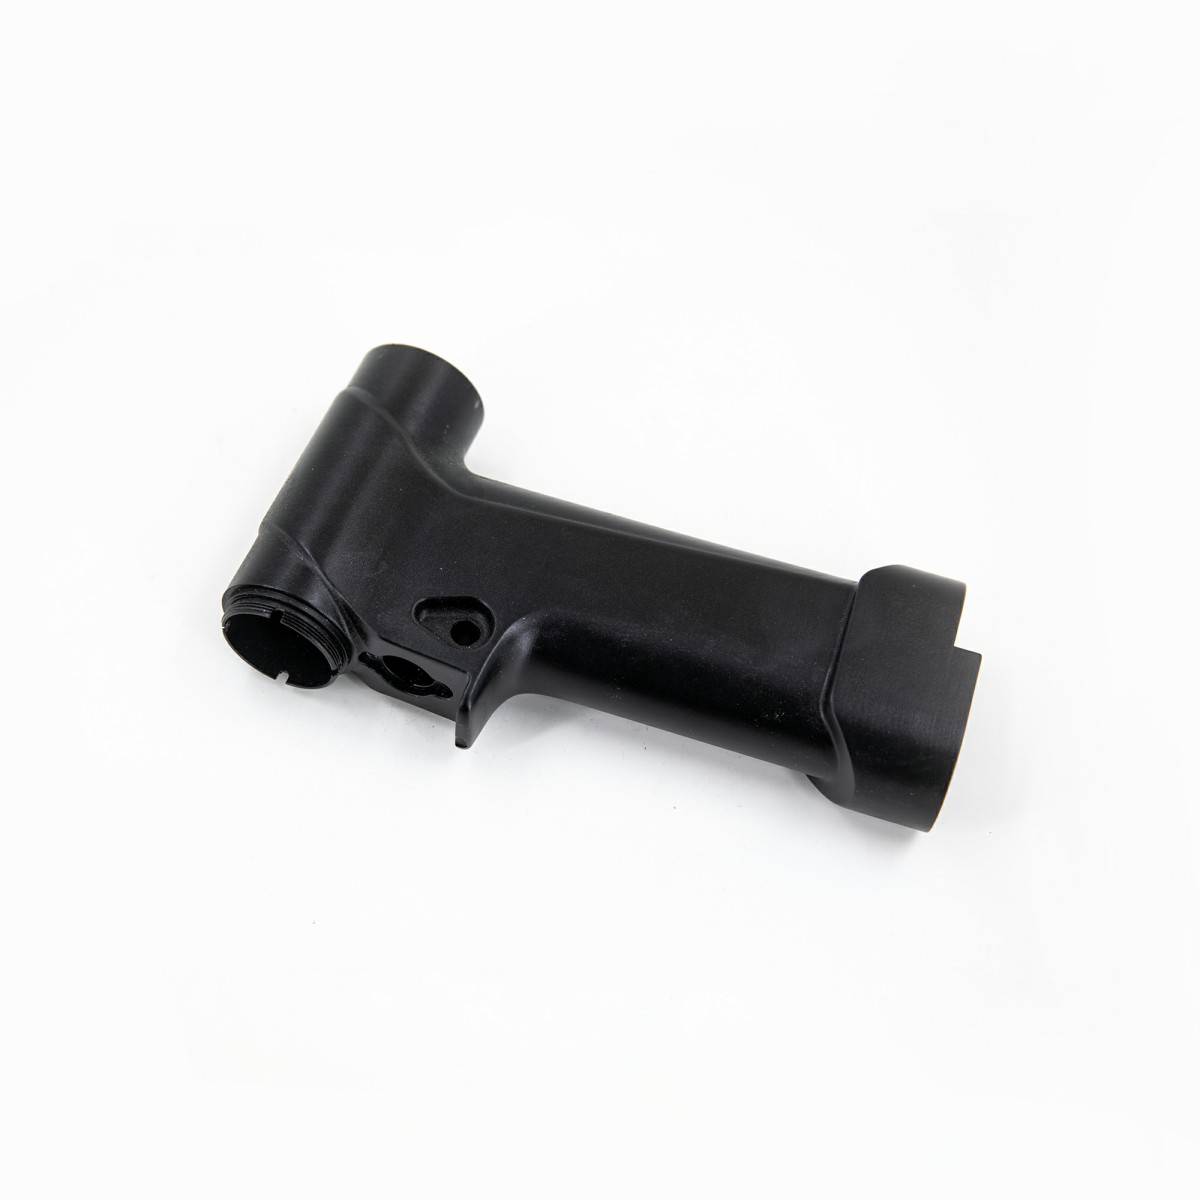 Medical gun handle (1)